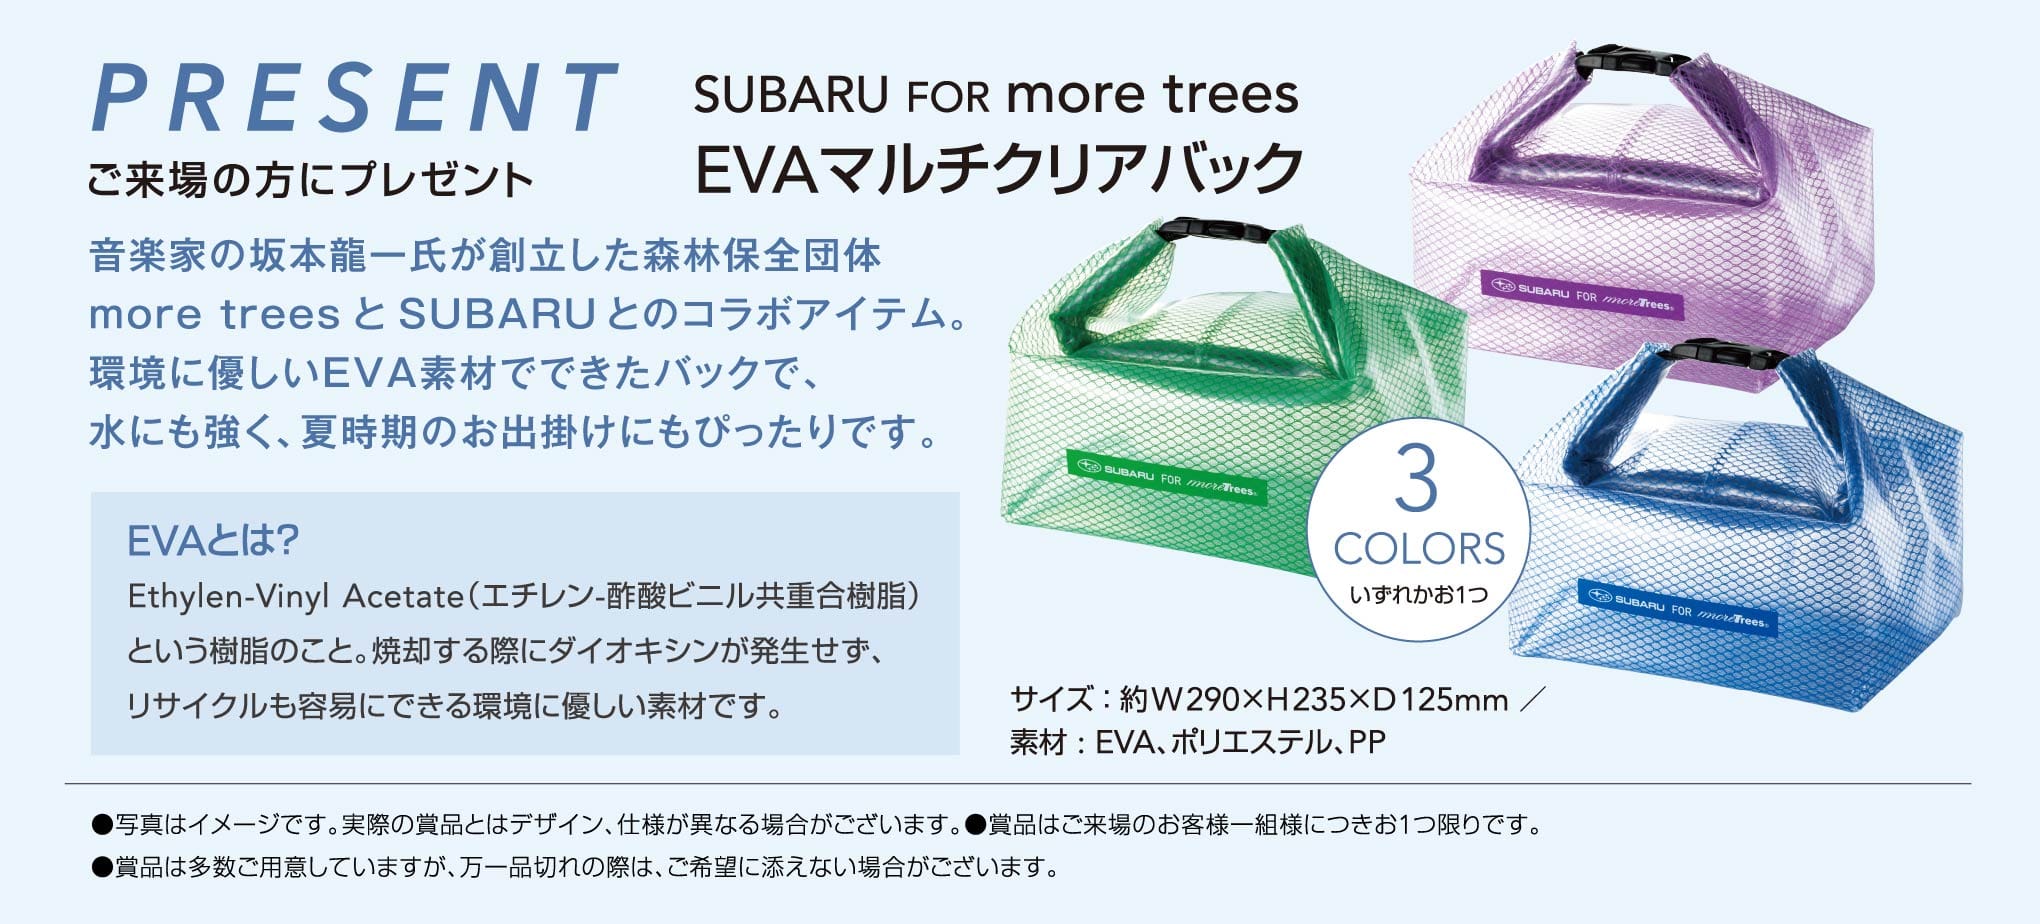 北海道スバル PREZENT ご来場の方にプレゼント  SUBARU FOR more trees EVAマルチクリアバック